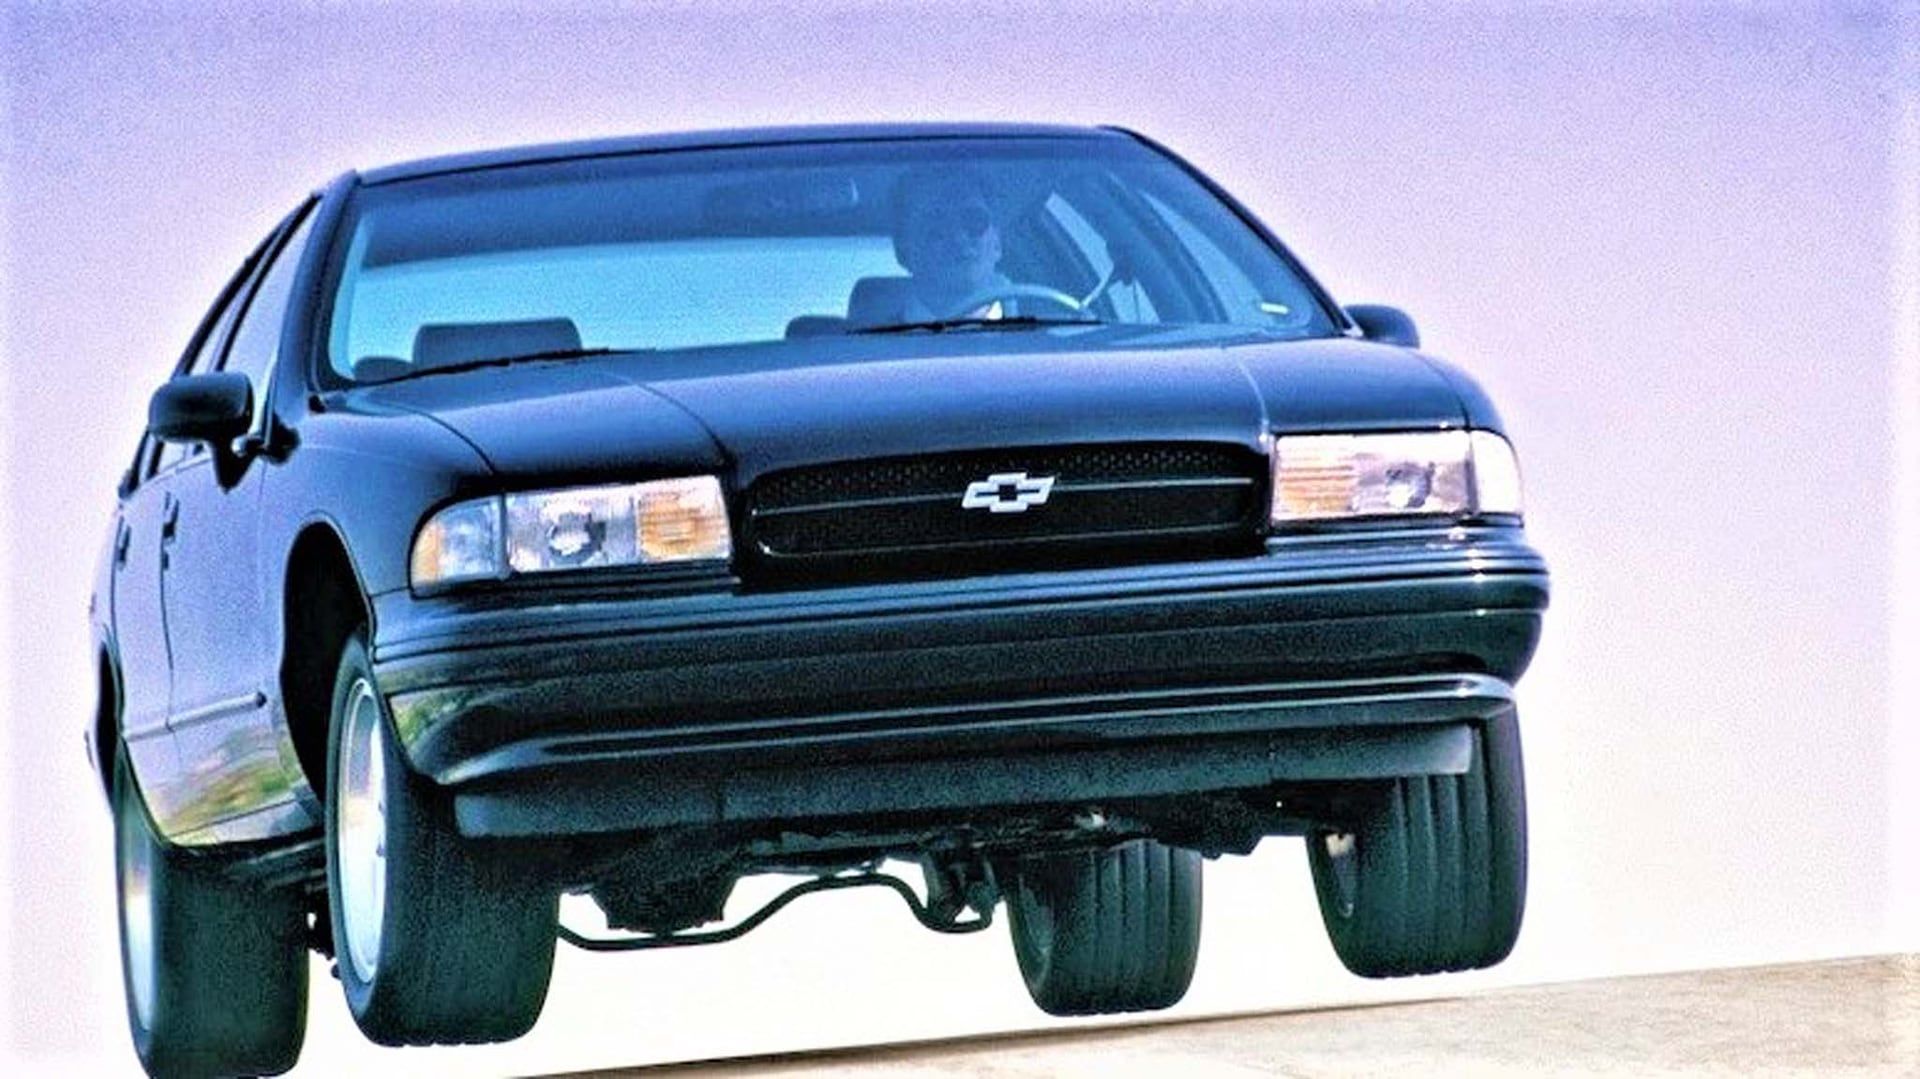 001-1996-chevy-caprice-impala-ss-jump